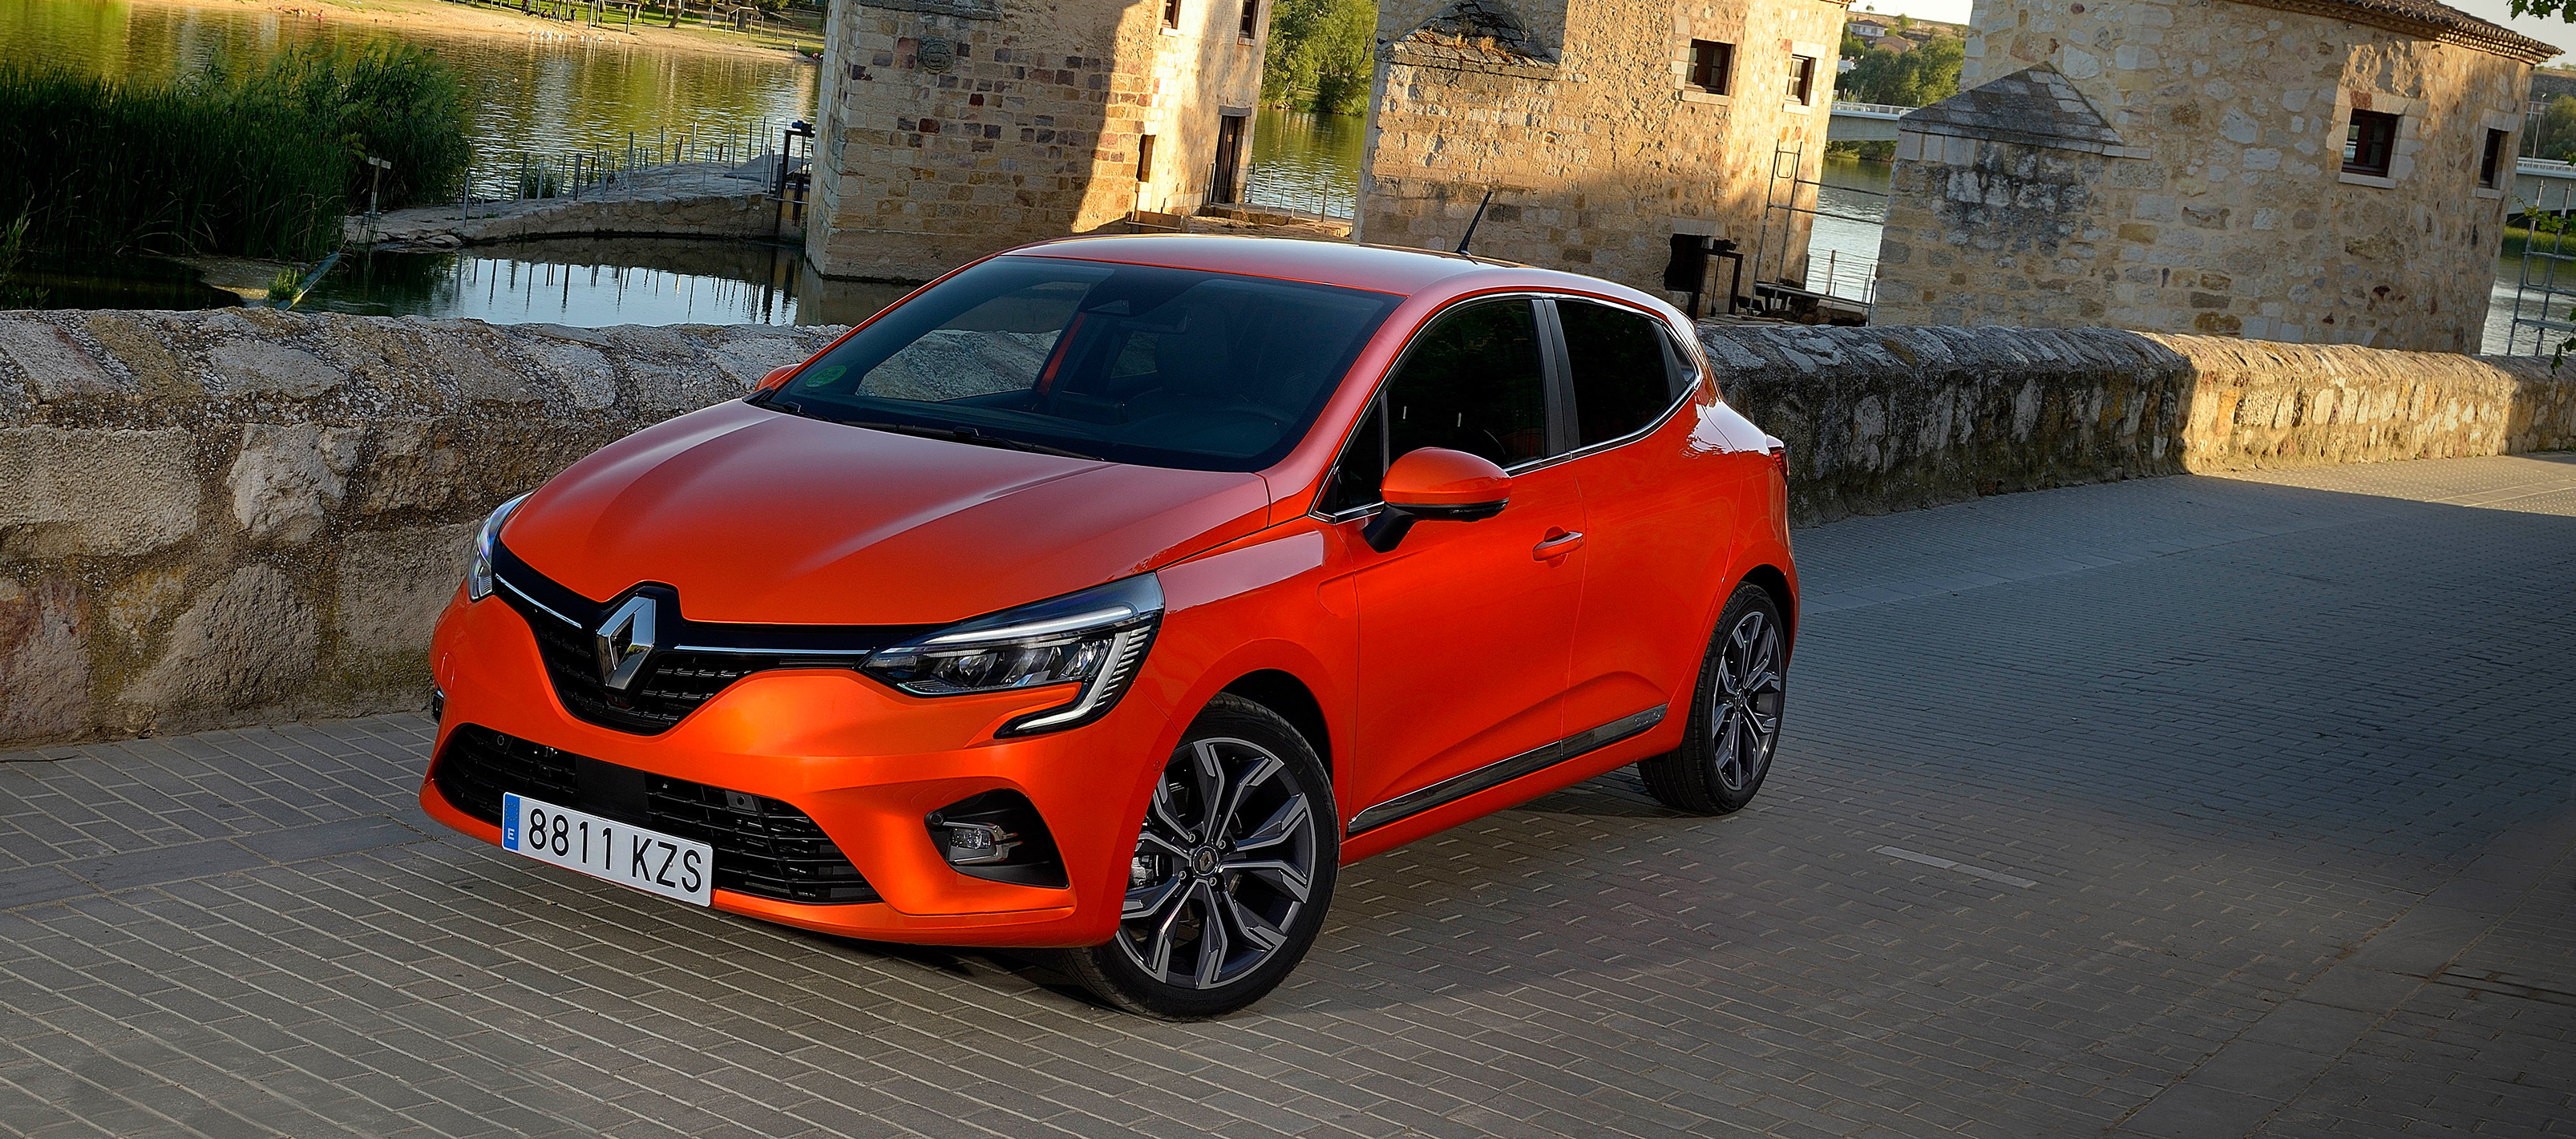 Renault Clio se presenta en España